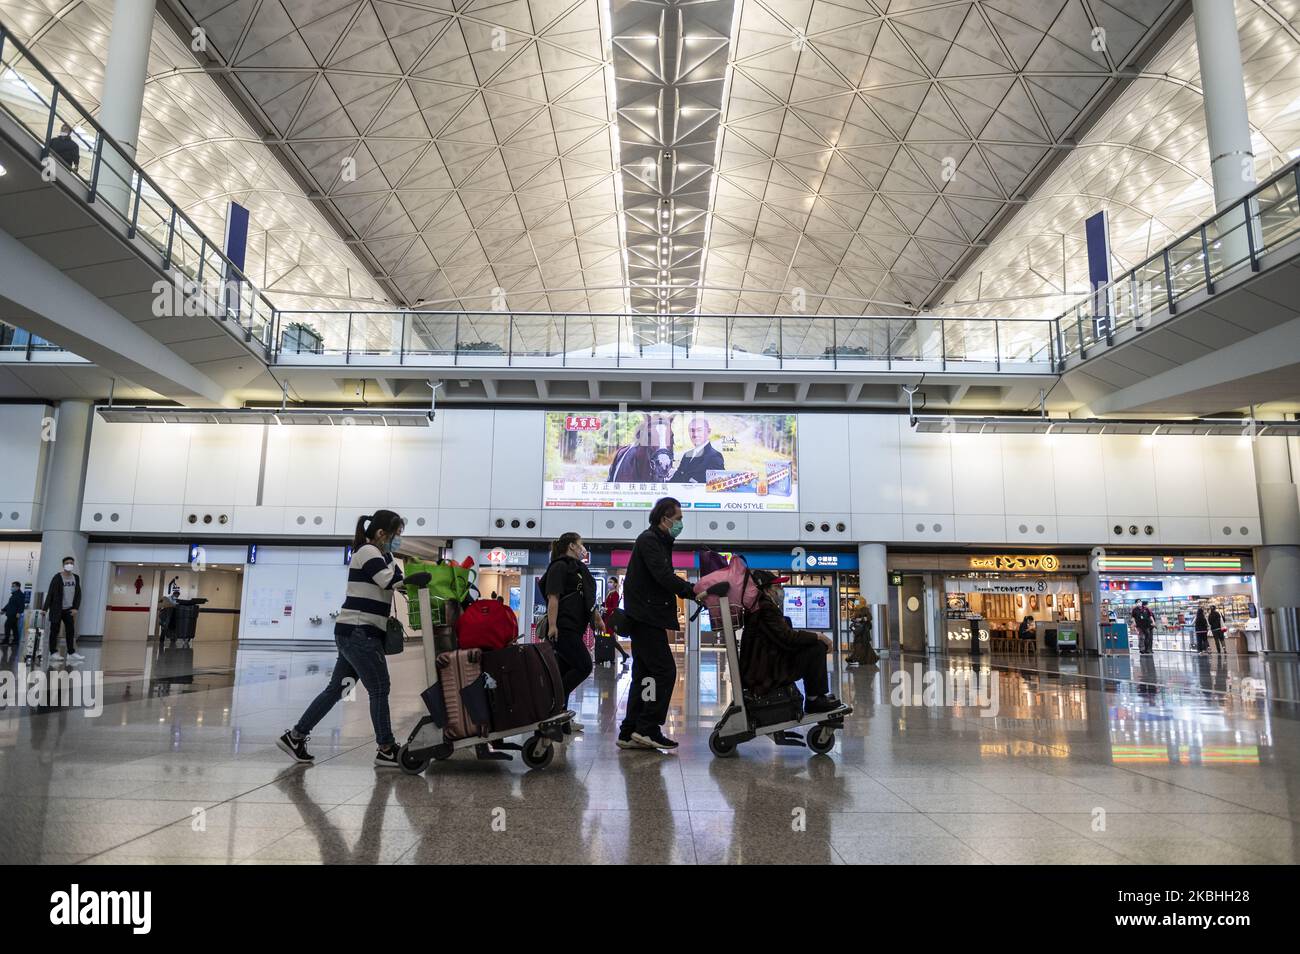 Am 22. Februar 2020 sind Passagiere, die den Gepäckwagen schieben, im Terminal des Internationalen Flughafens von Hongkong zu sehen. Das Coronavirus oder Covid-19, das aus Wuhan China stammt, hat bis heute über 77.000 Menschen infiziert und 2361 Menschen weltweit getötet. Die Passagierflüge nach und aus Hongkong sind um zwei Drittel zurückgefallen, da die Fluggesellschaften Flüge annulliert haben und die Reisenden aufgrund des Coronavirus in Hongkong stürzte. (Foto von Vernon Yuen/NurPhoto) Stockfoto